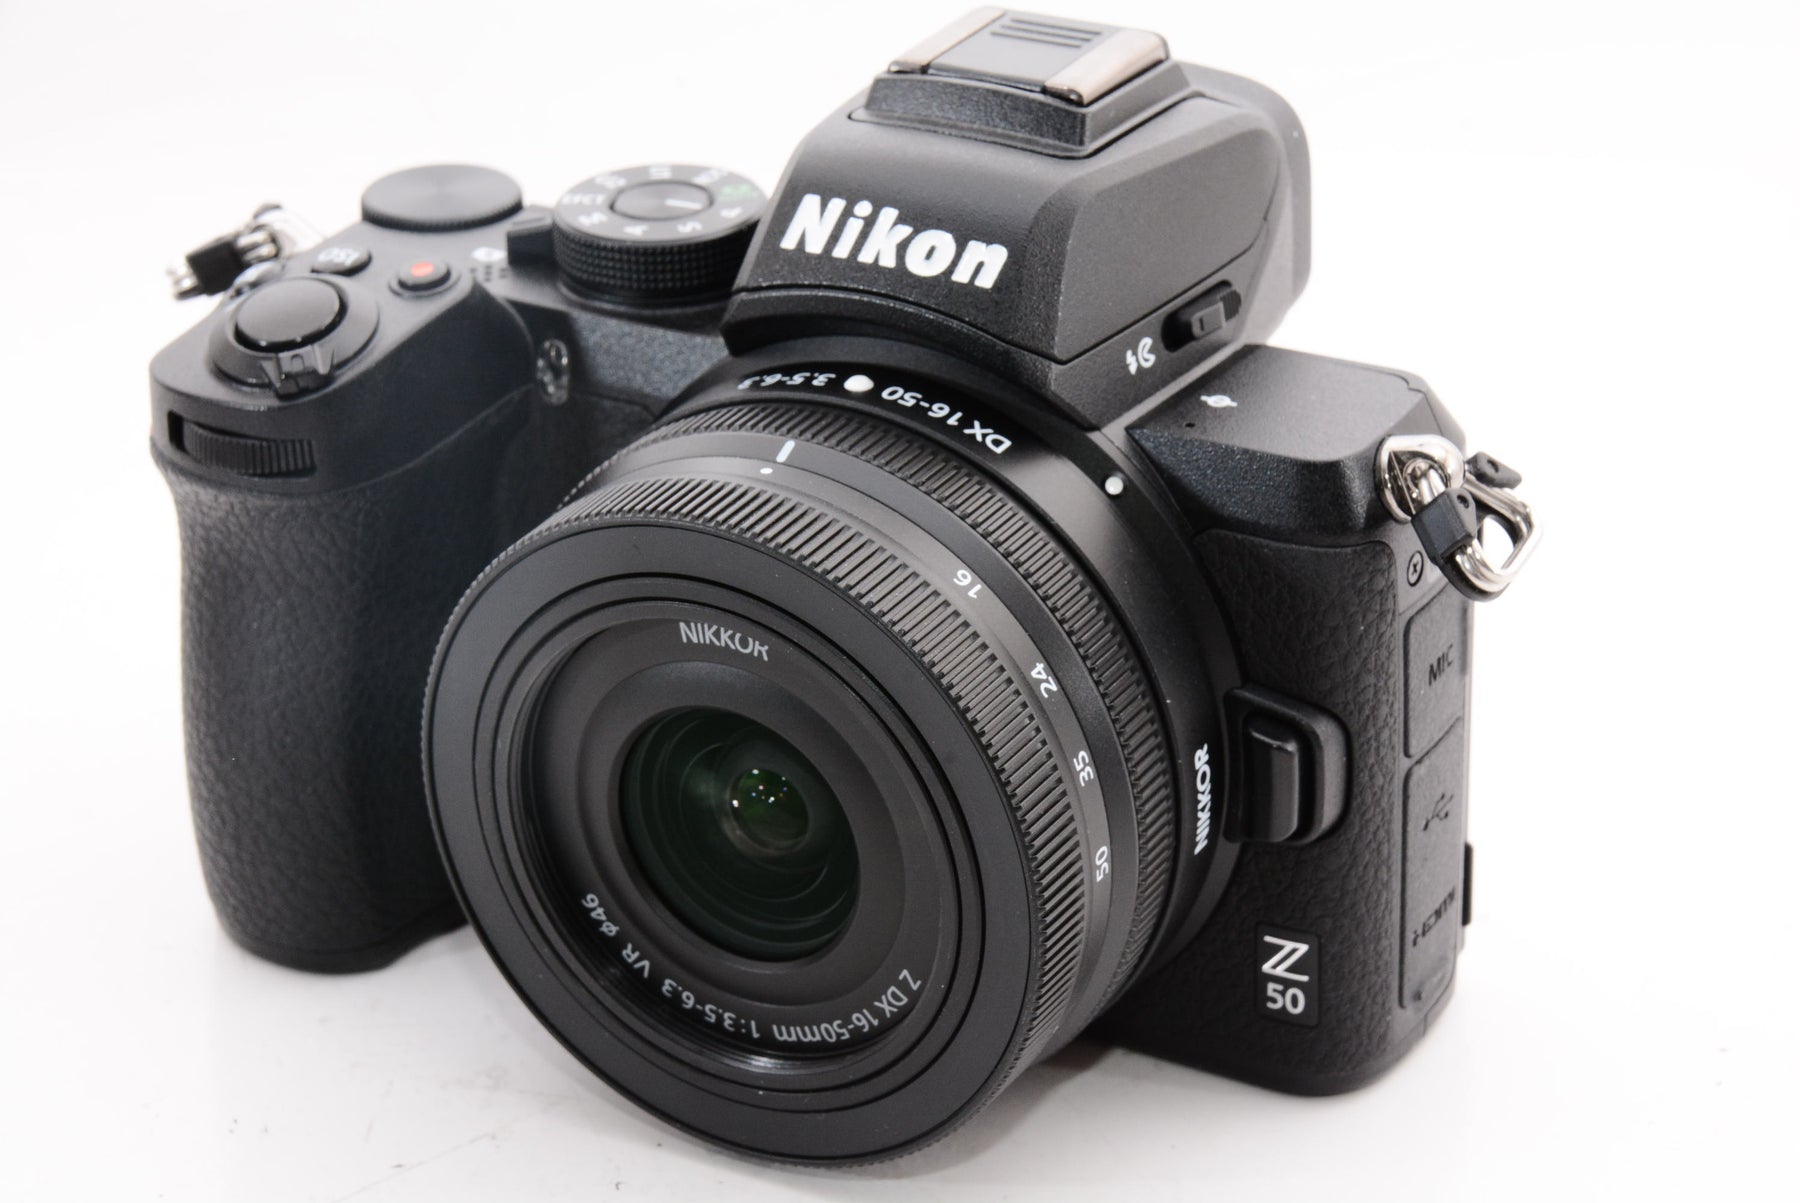 【ほぼ新品】Nikon ミラーレス一眼カメラ Z50 レンズキット NIKKOR Z DX 16-50mm f/3.5-6.3 VR付属  Z50LK16-50 ブラック